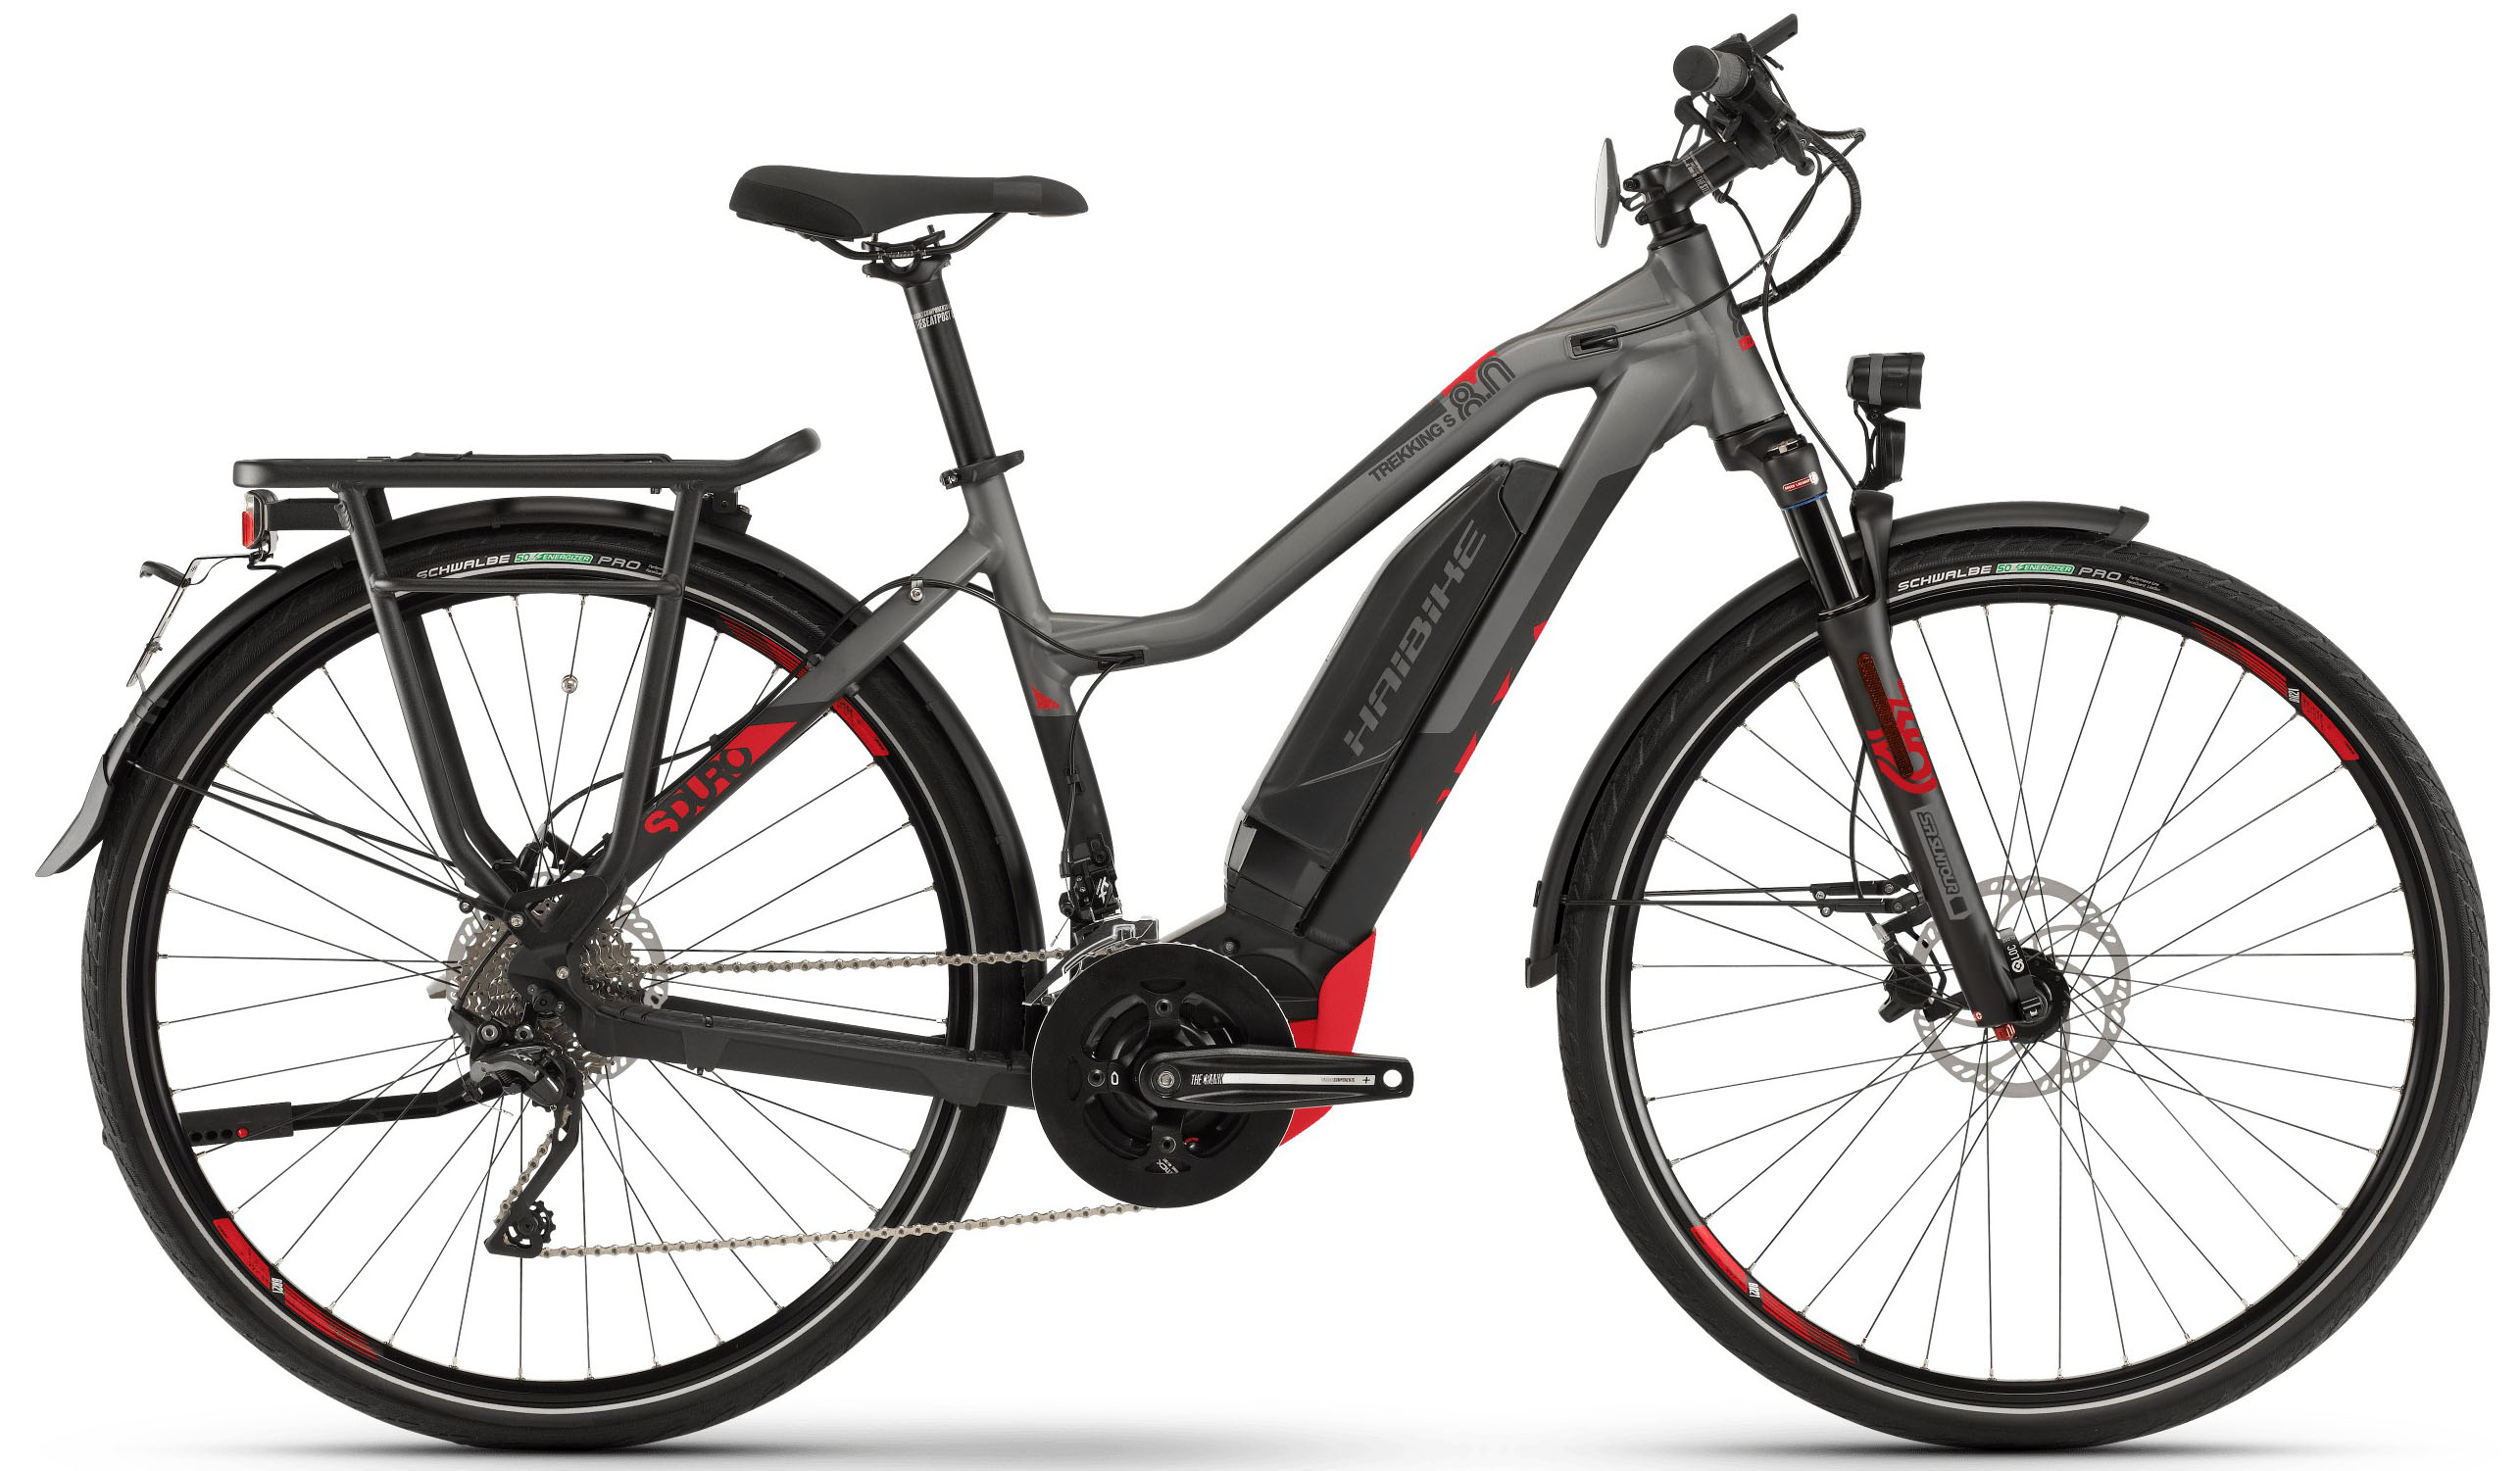  Отзывы о Трехколесный детский велосипед Haibike SDURO Trekking S 8.0 Damen 500Wh 20G XT 2019